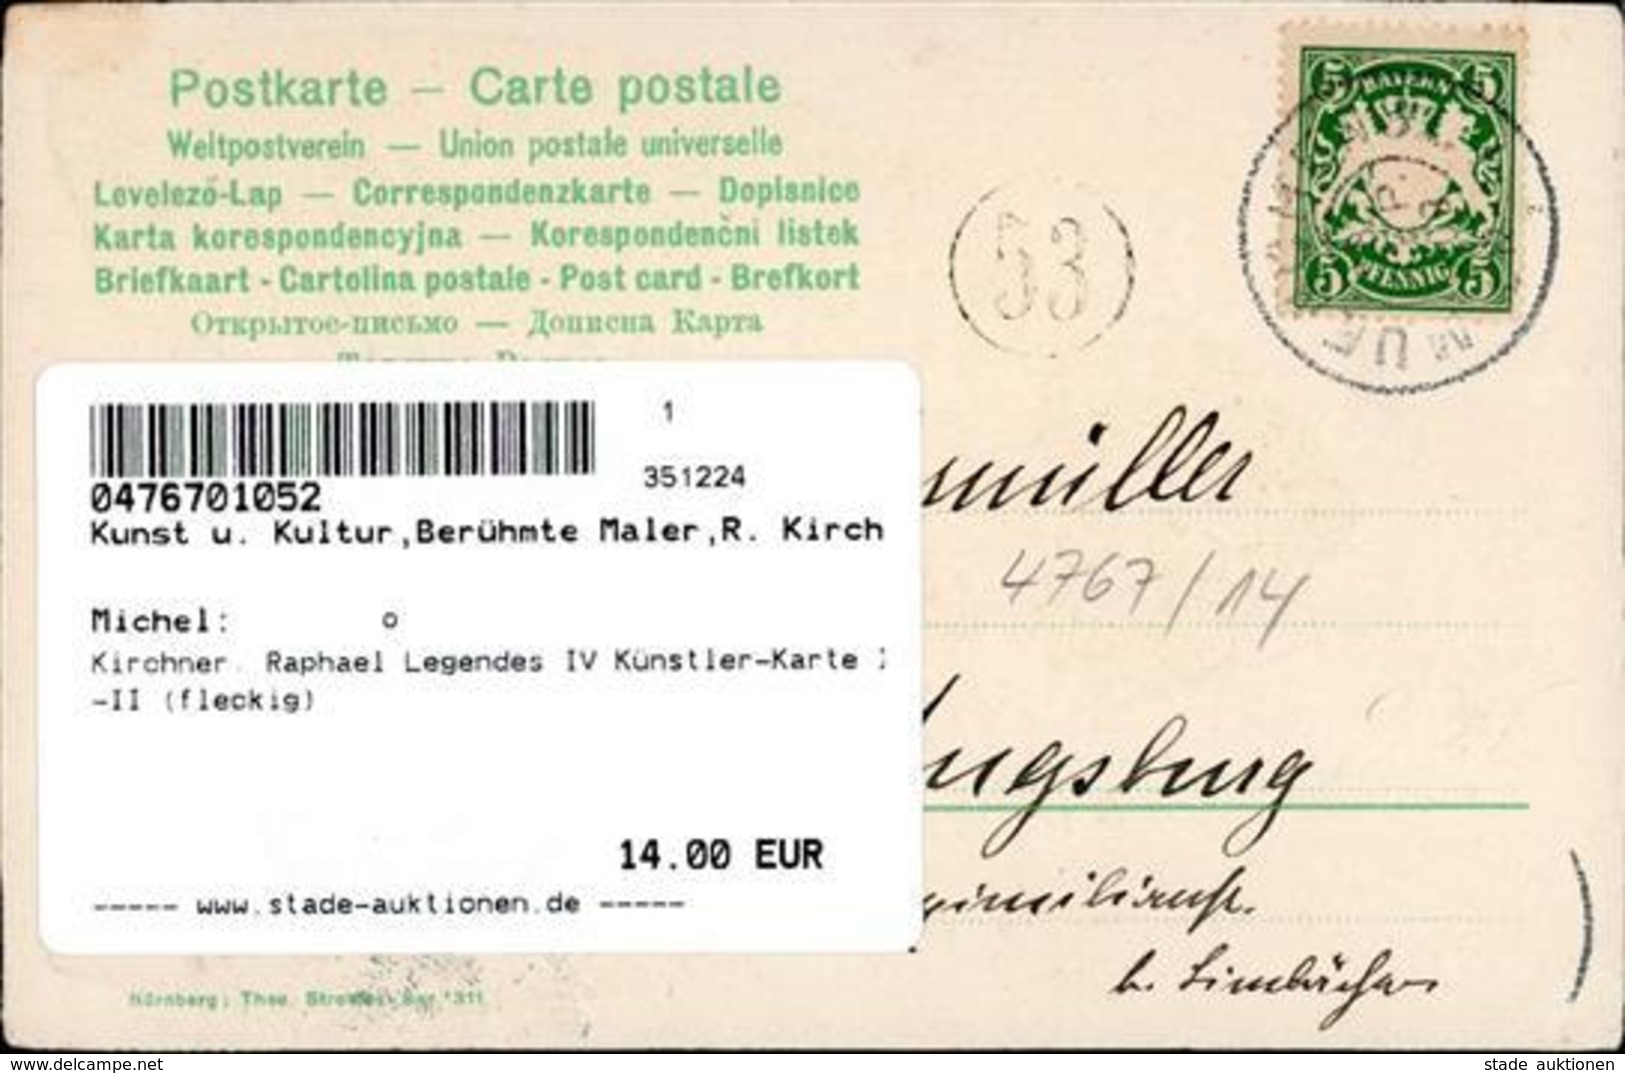 Kirchner, Raphael Legendes IV Künstler-Karte I-II (fleckig) - Kirchner, Raphael